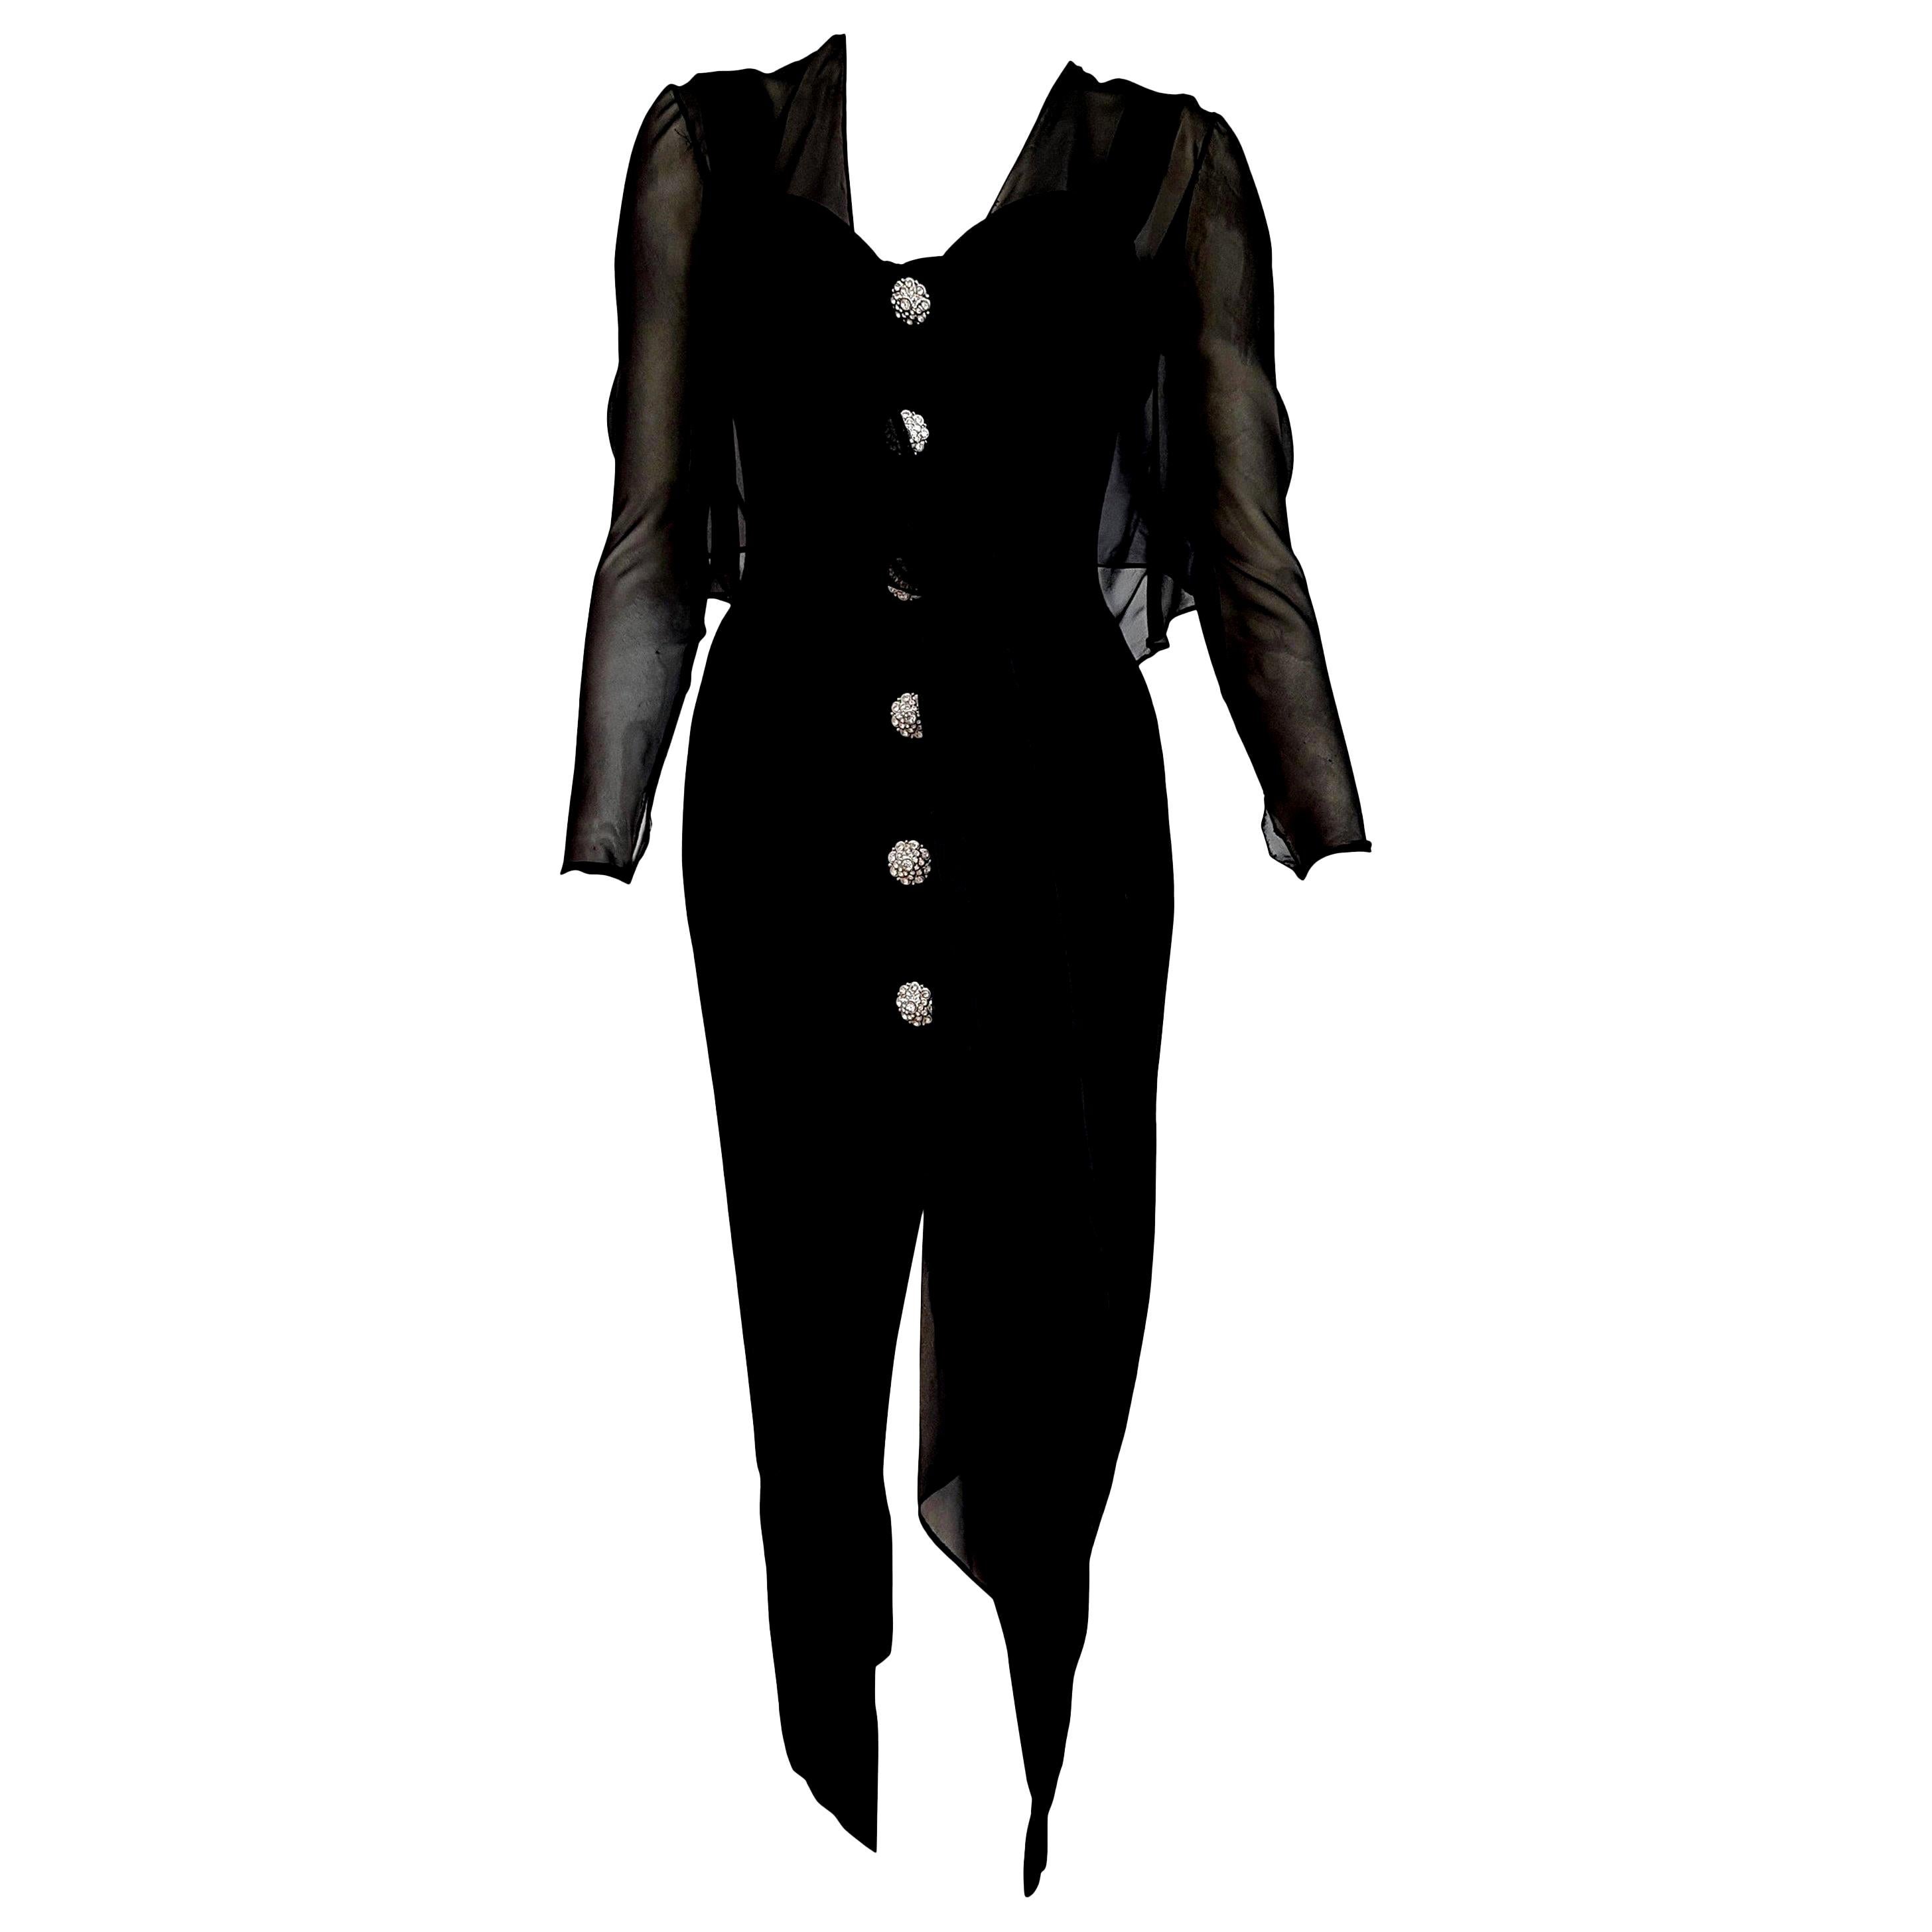 Isabelle ALLARD Paris "New" Couture Swarovski buttons Silk Wool Dress - Unworn For Sale